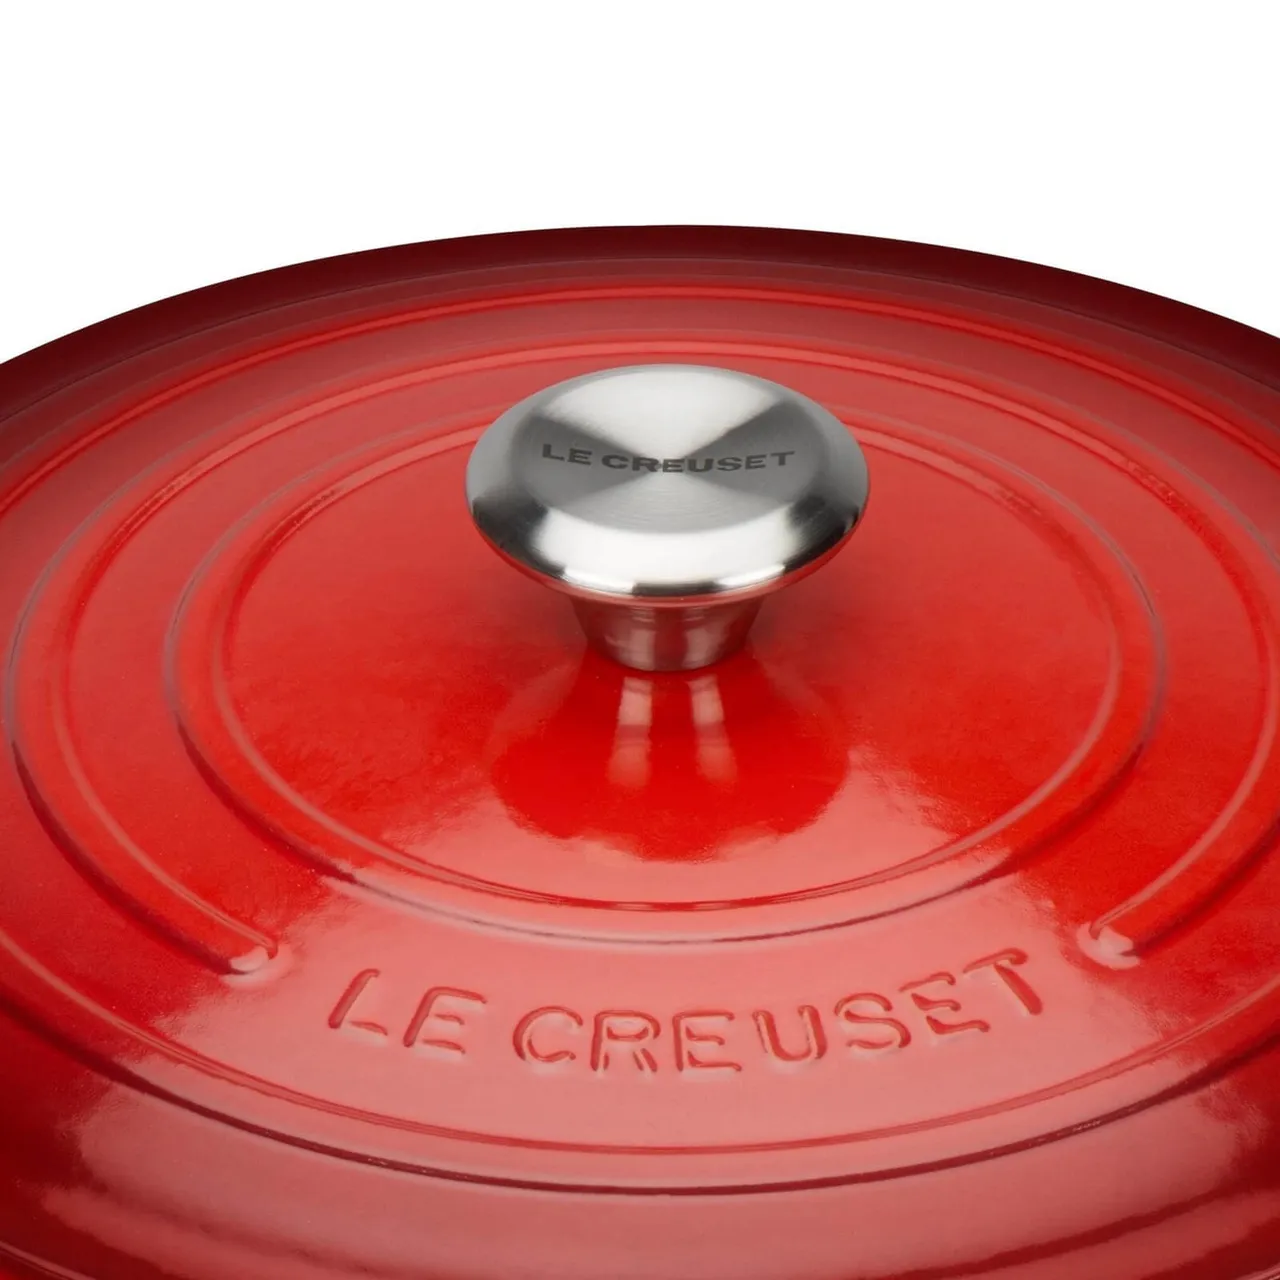 Le Creuset Signature Cast Iron Round Casserole Dish - 28cm - Cerise